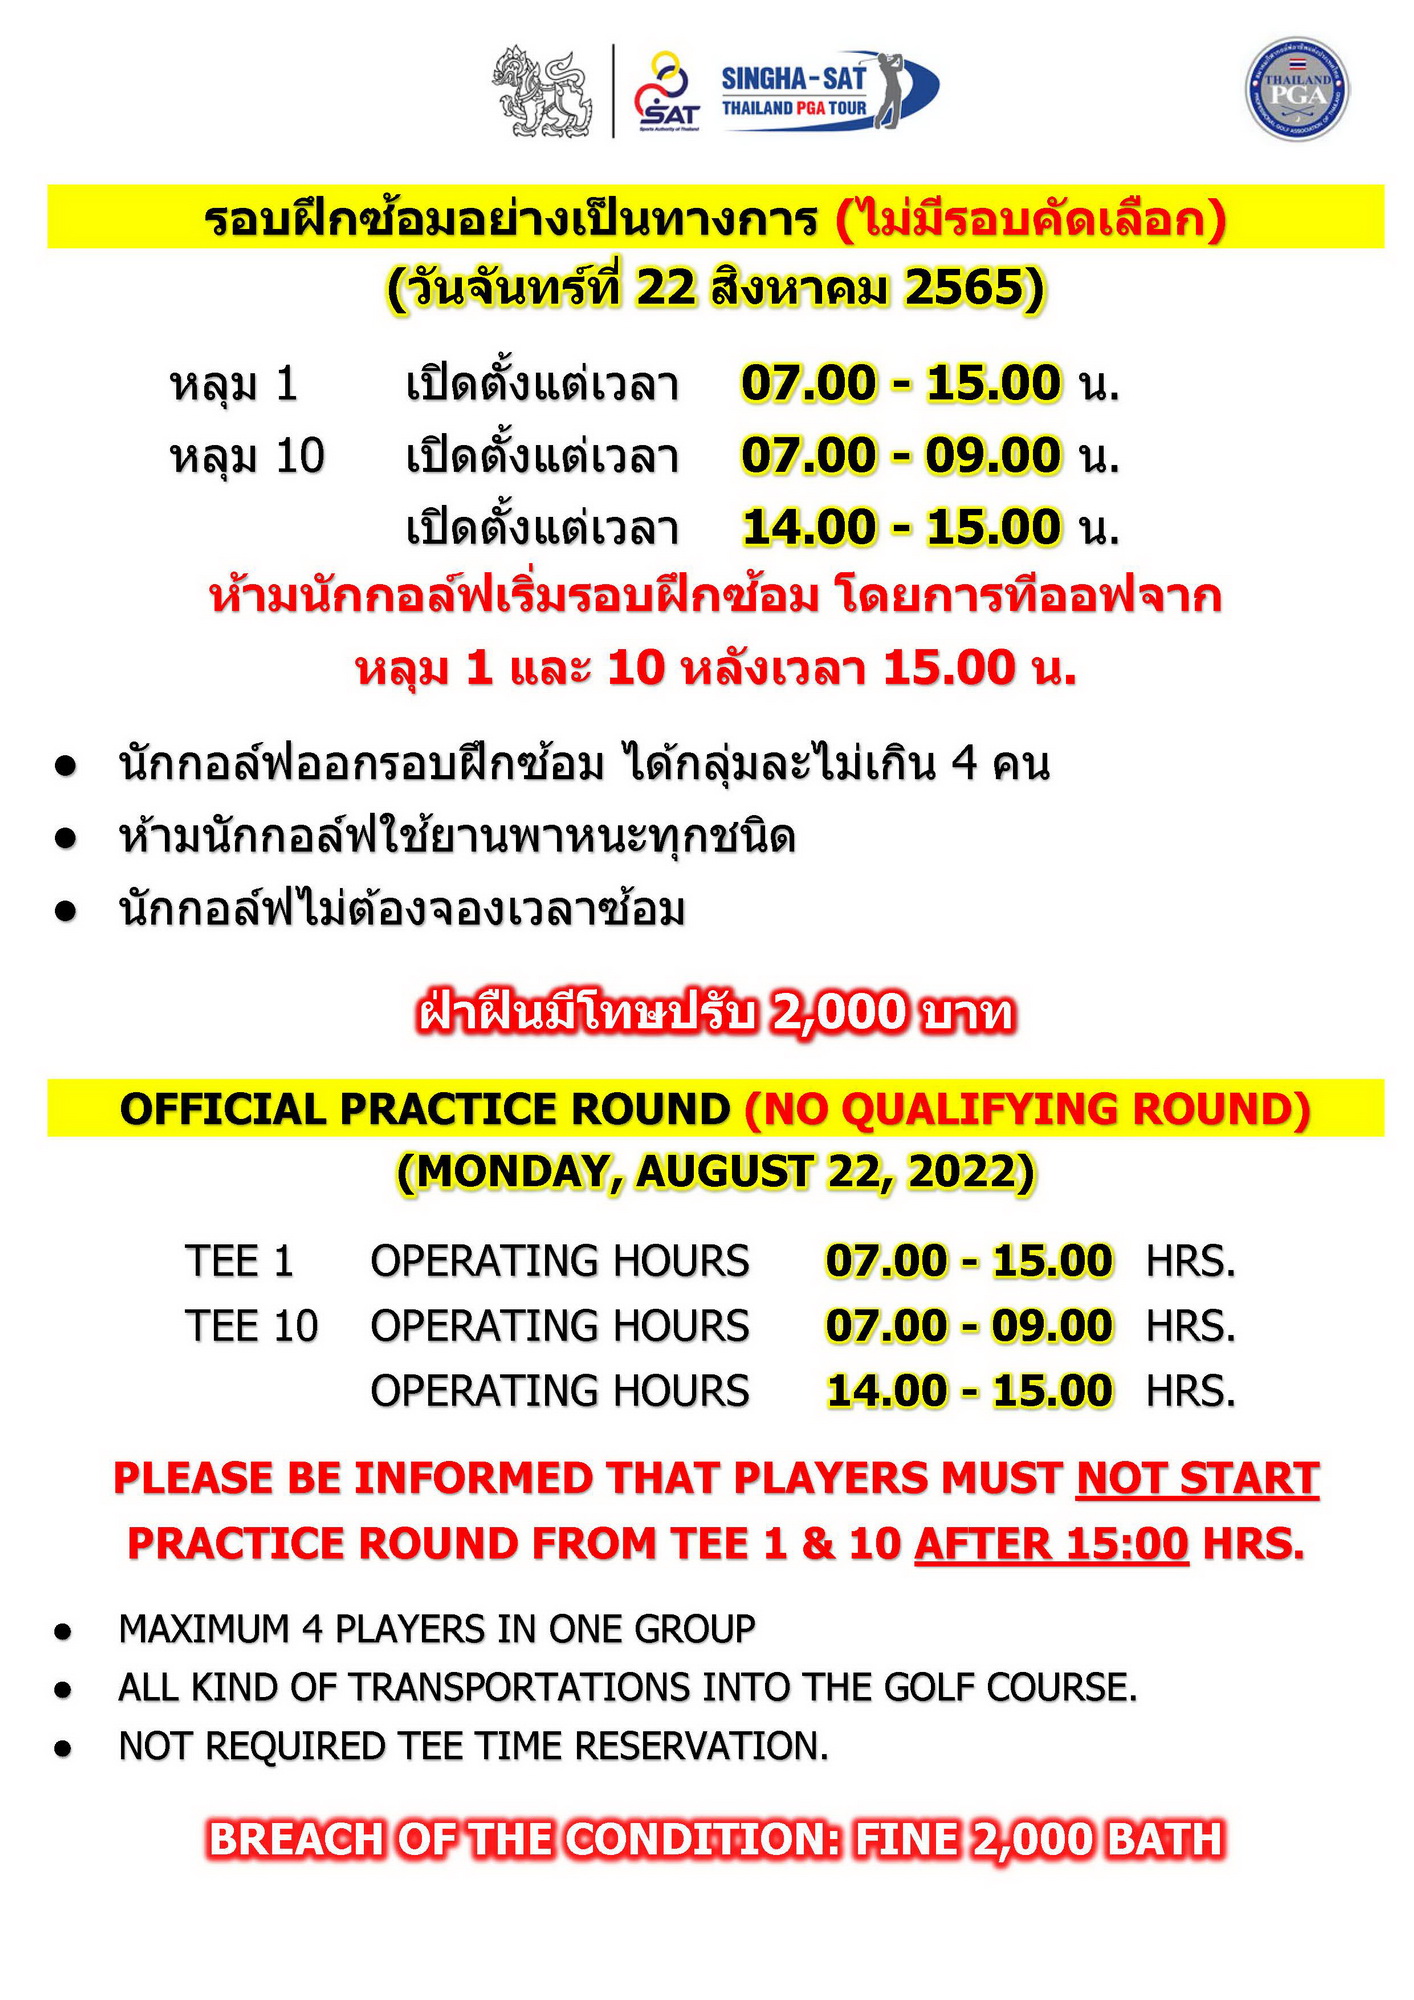 รอบฝึกซ้อมอย่างเป็นทางการ SINGHA-SAT Chiangmai Championship 2022 (ไม่มีรอบคัดเลือก) – ข่าวกีฬา